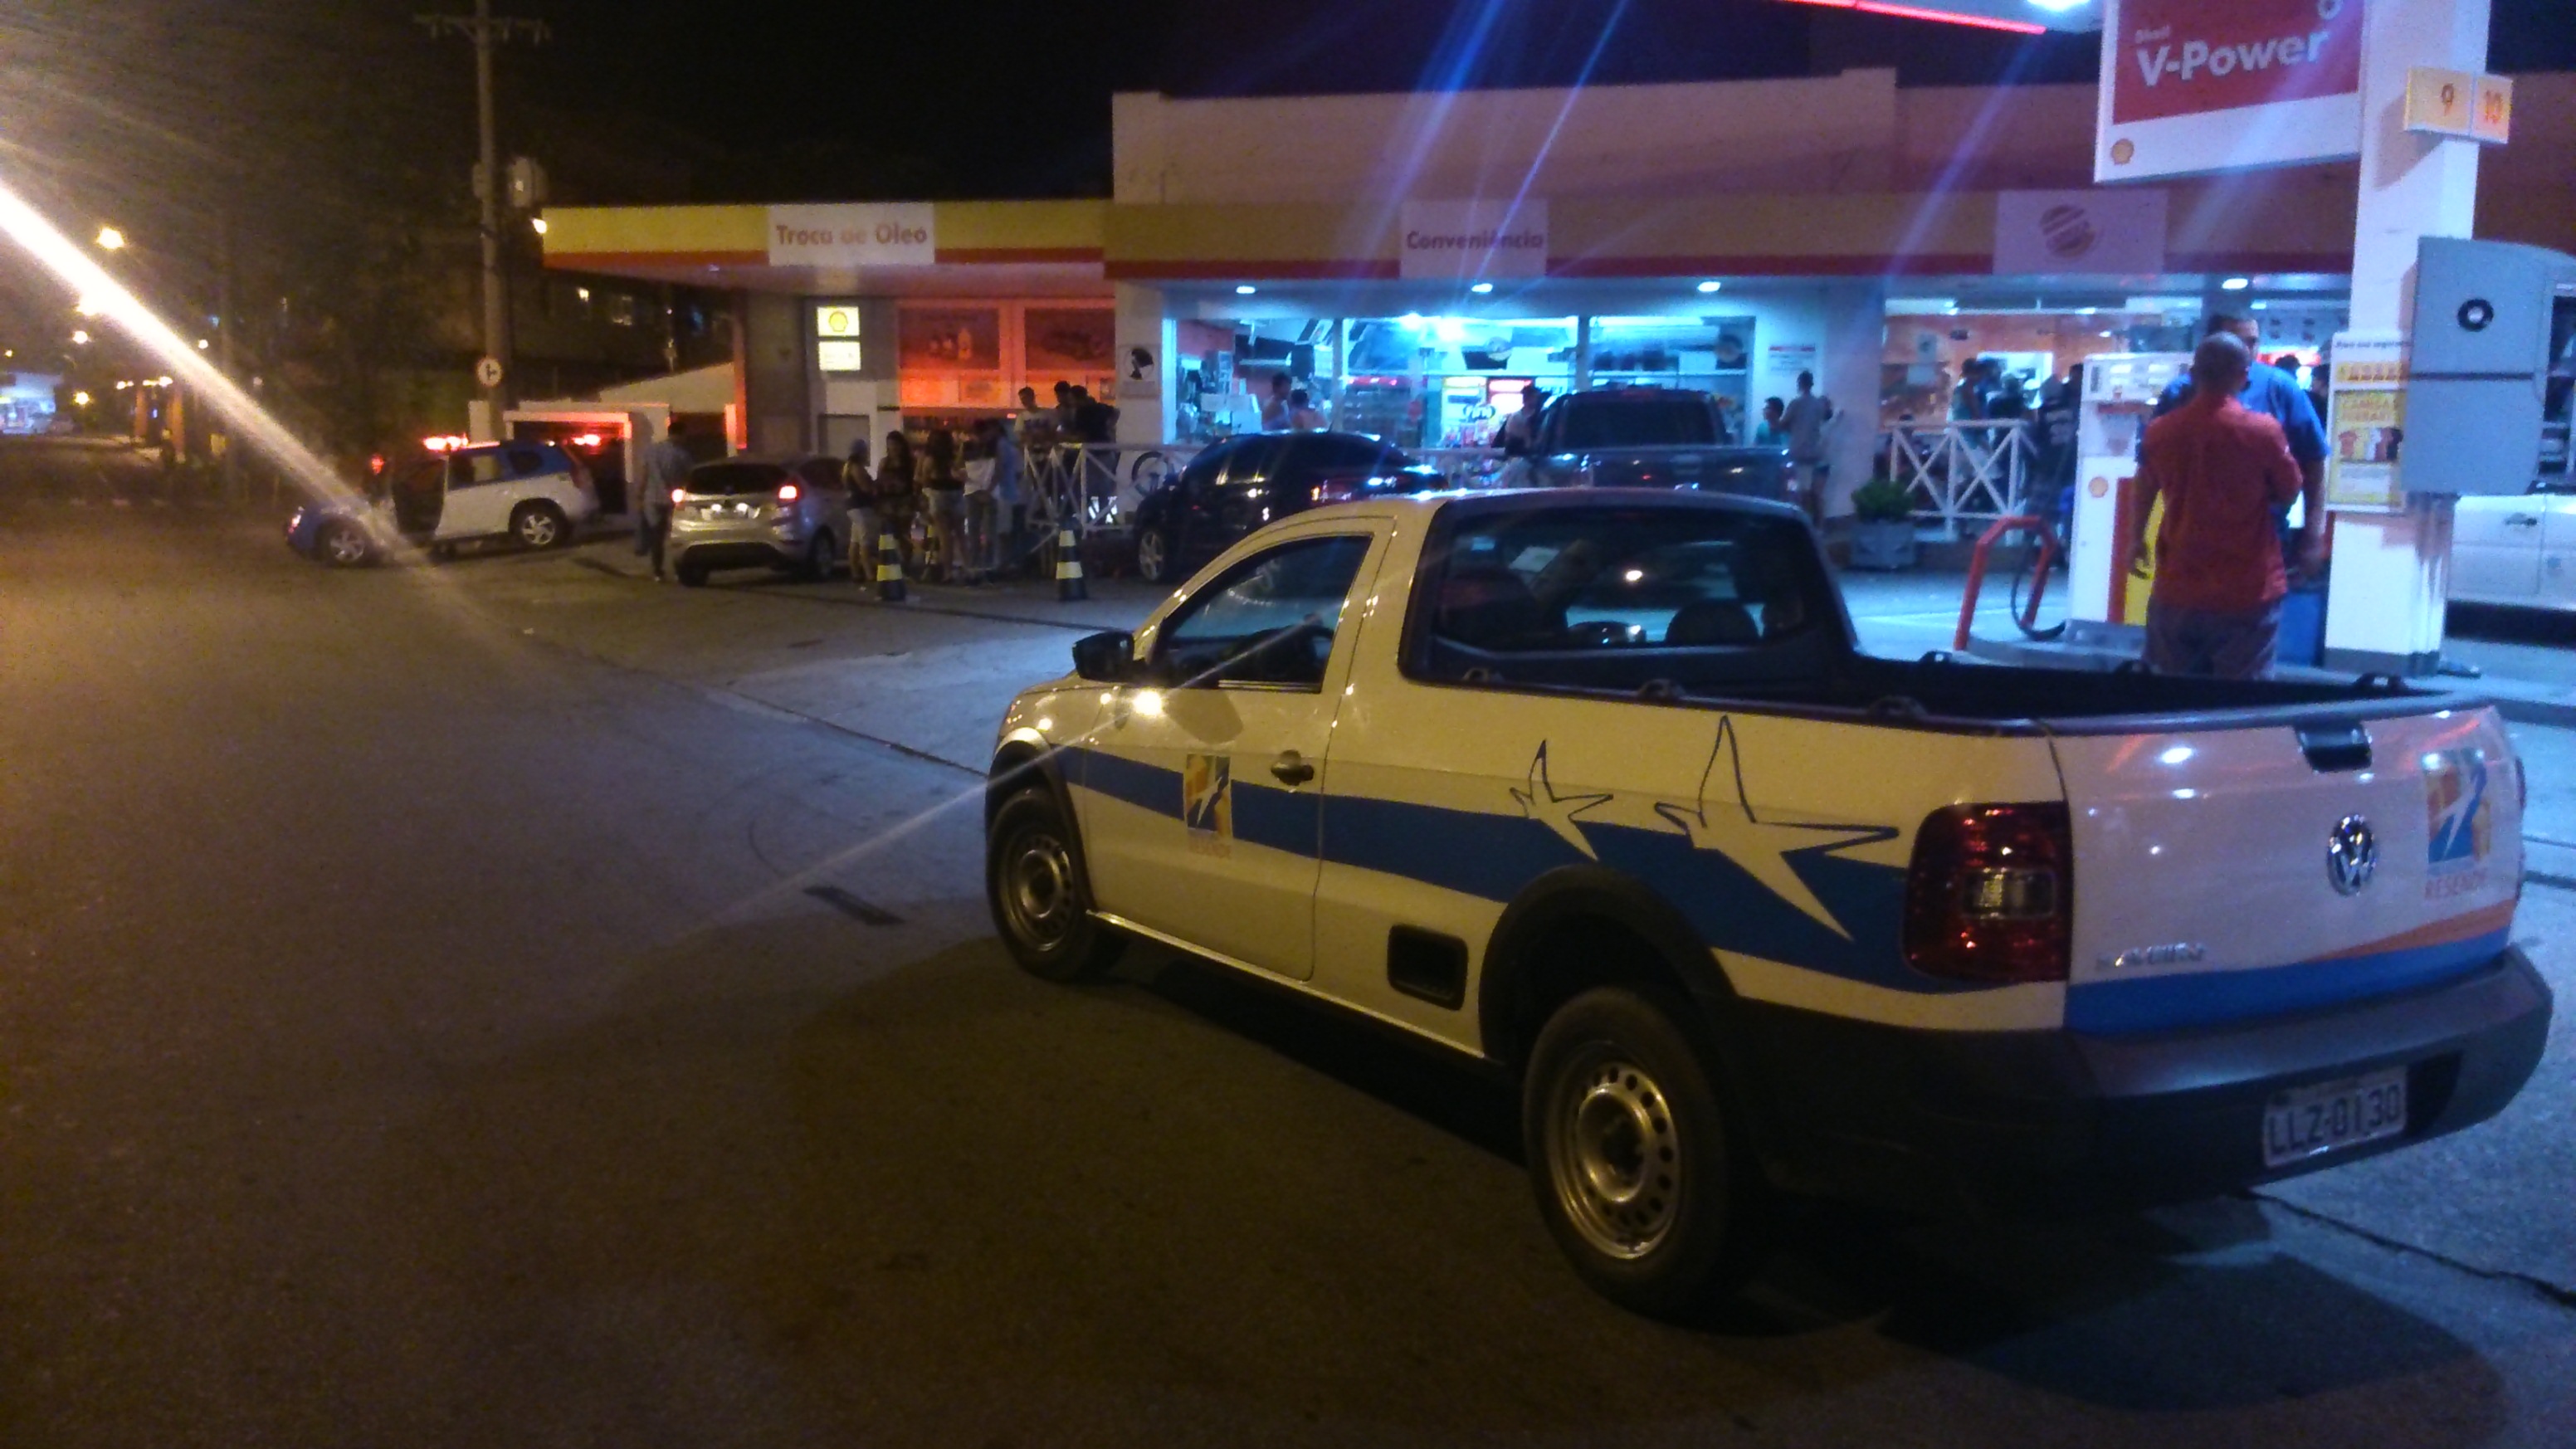 Prefeitura realiza Choque de Ordem em bares e lojas de conveniência durante a noite